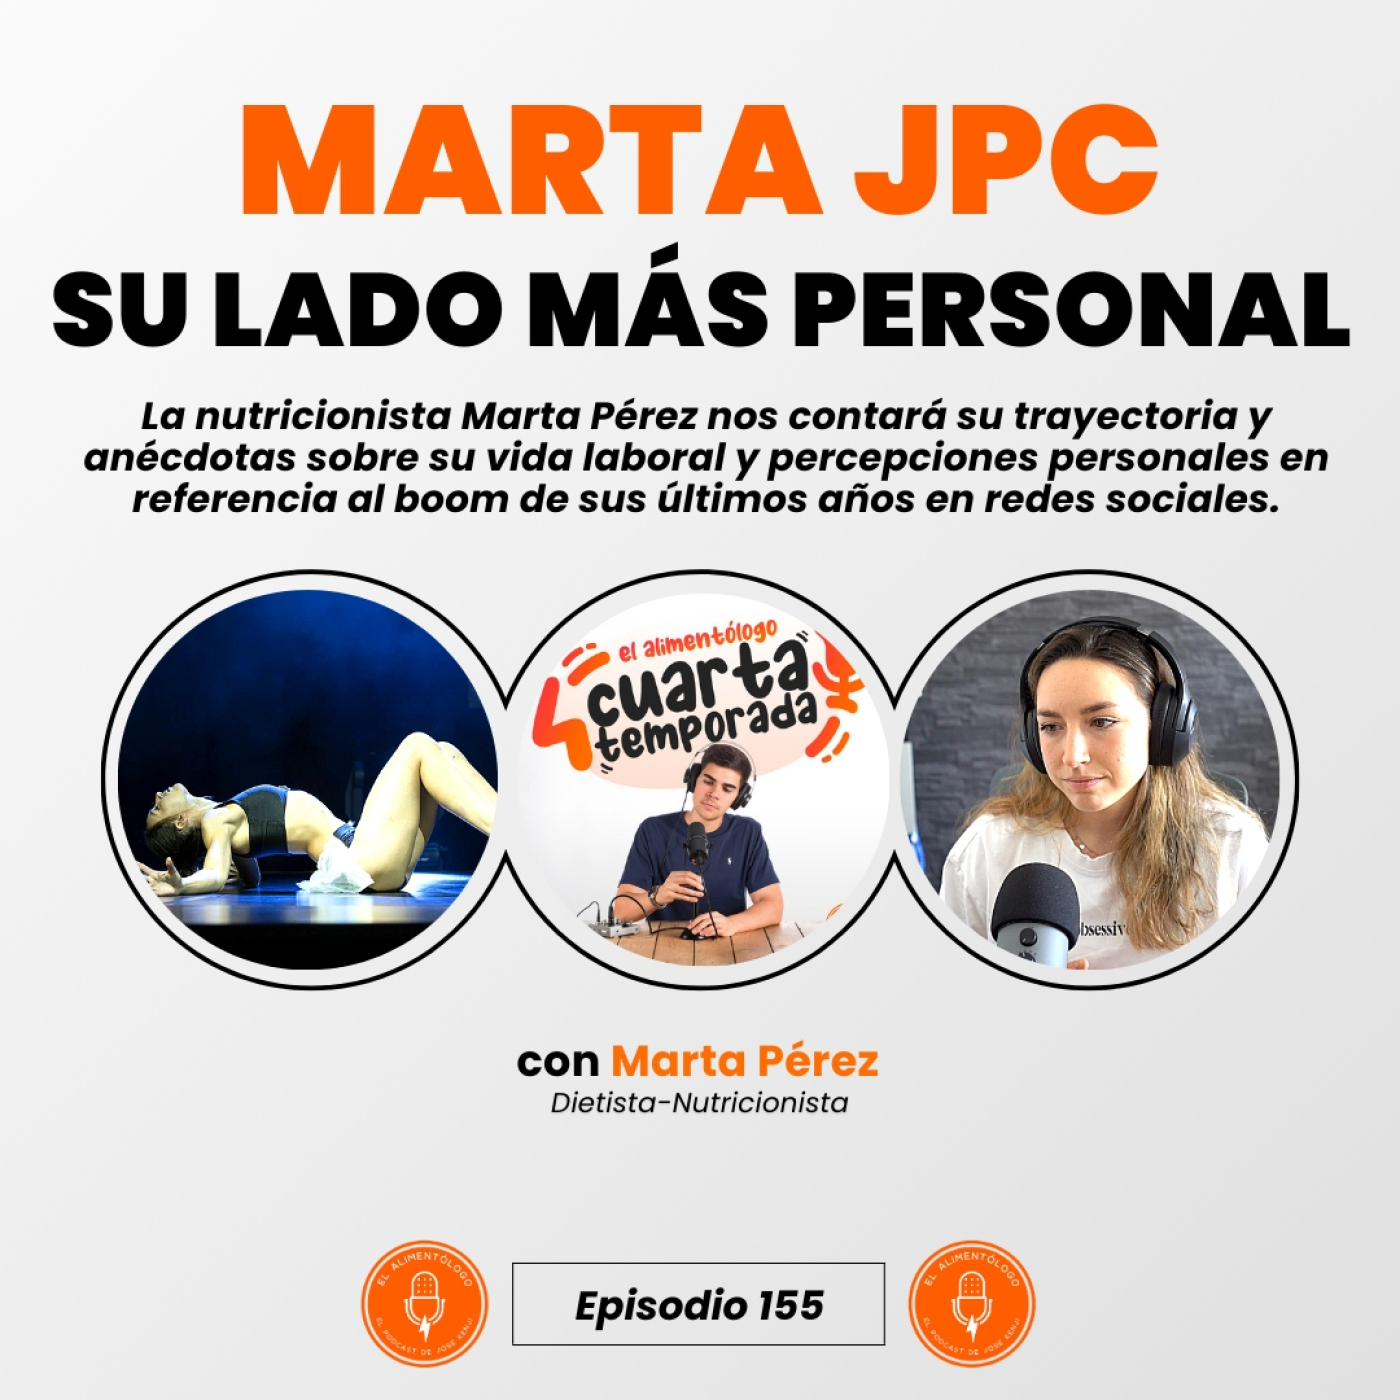 Marta PJC: Trayectoria, Boom en Redes Sociales y Anécdotas (Ep. 155)